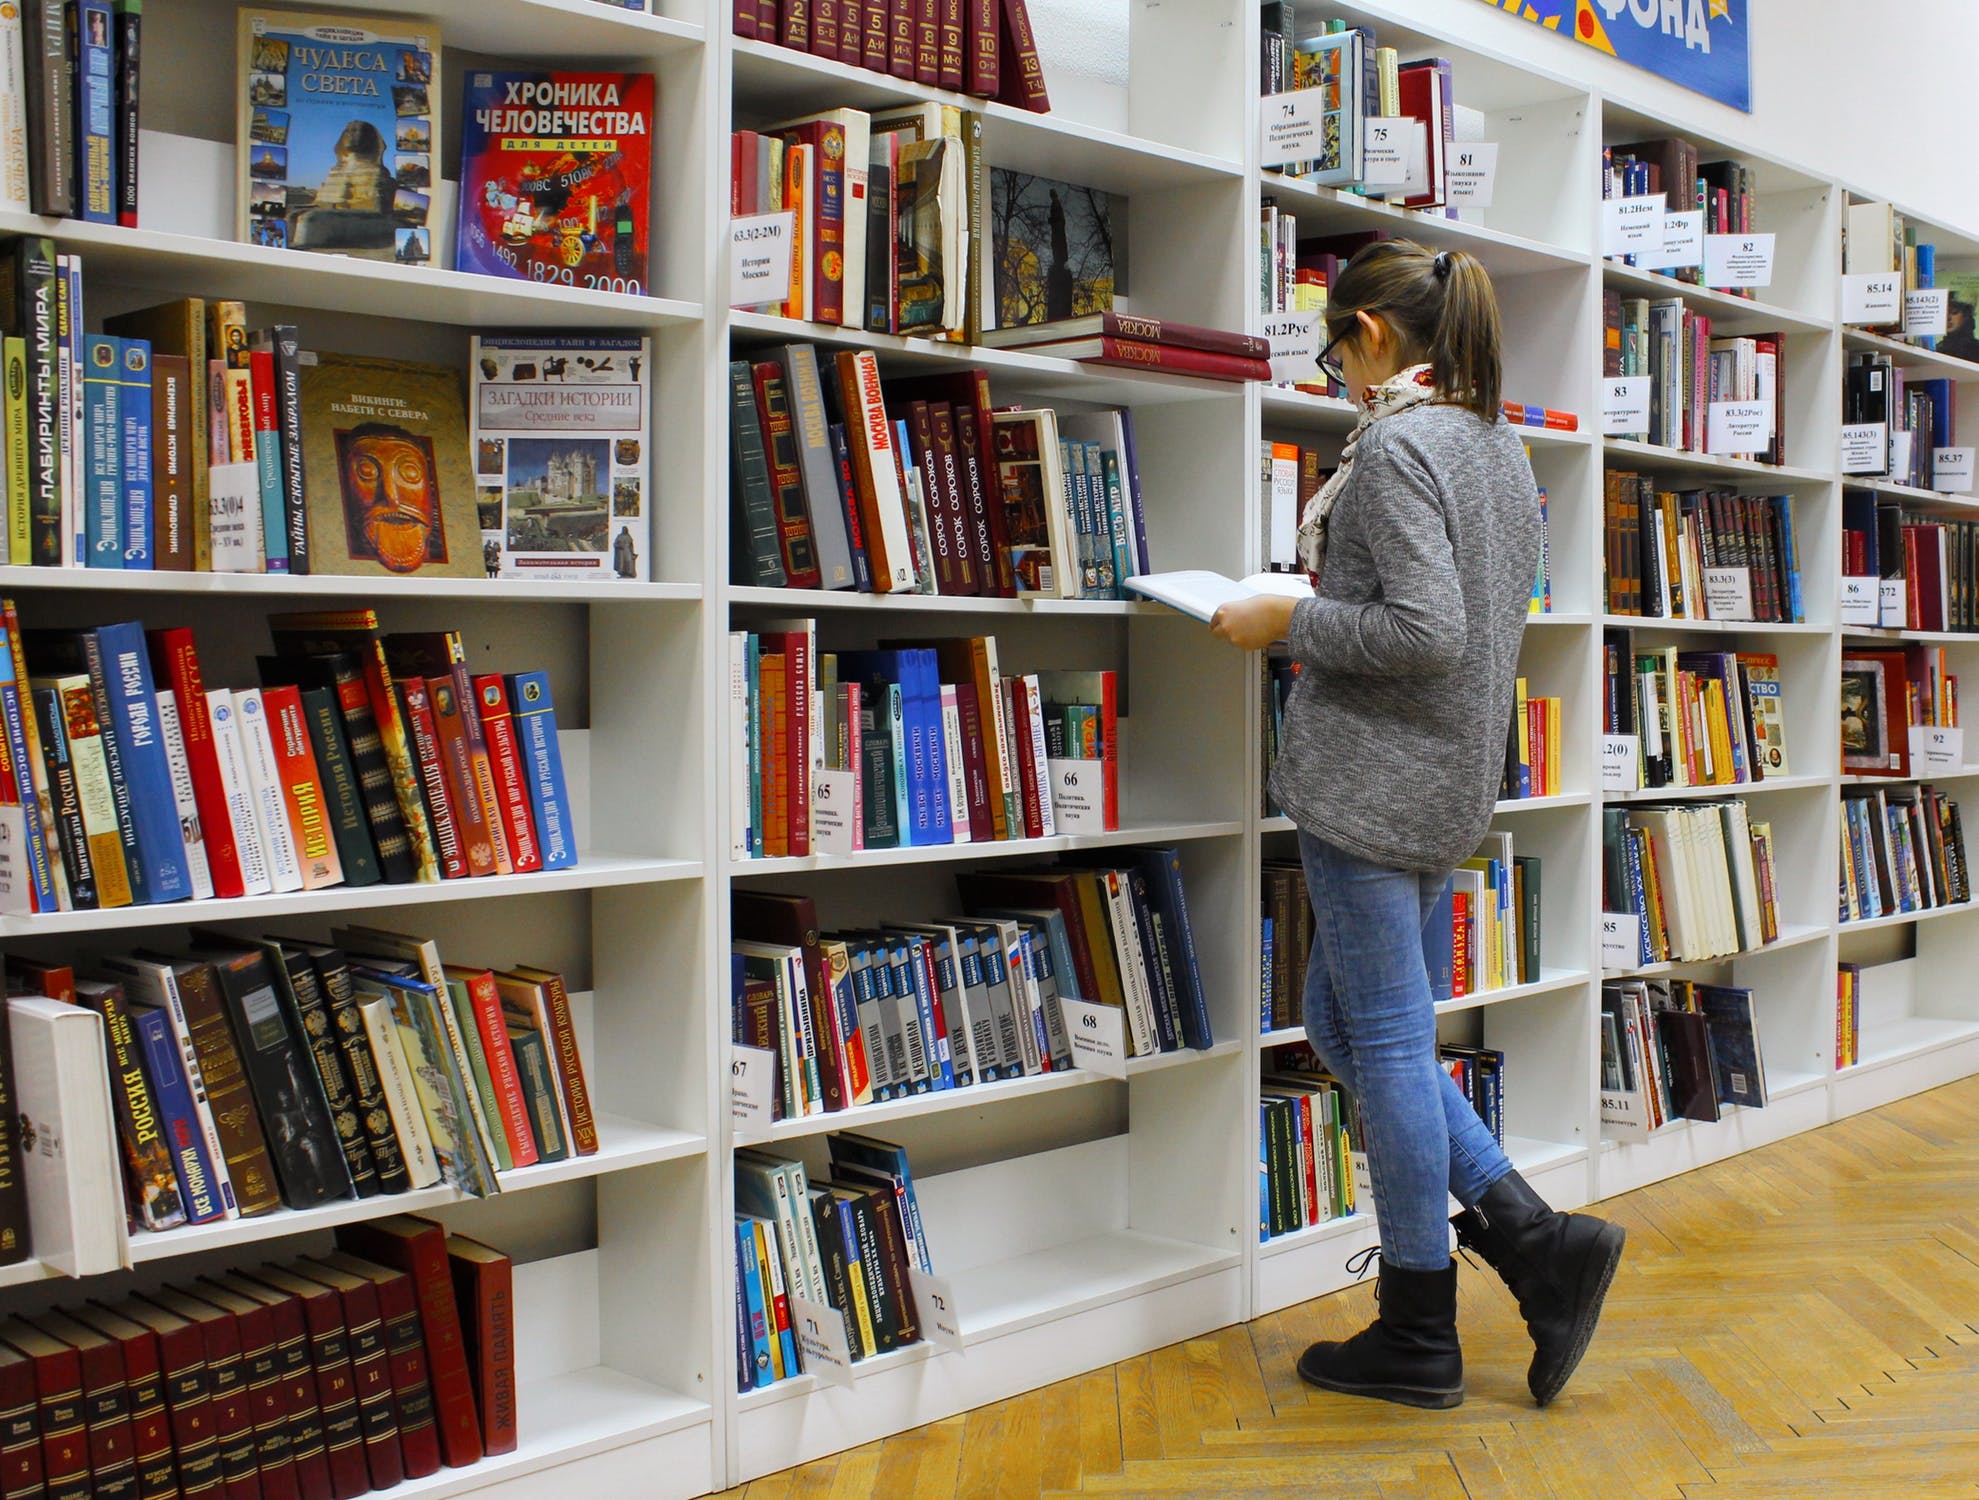 Estudiante buscando libros en un estante.